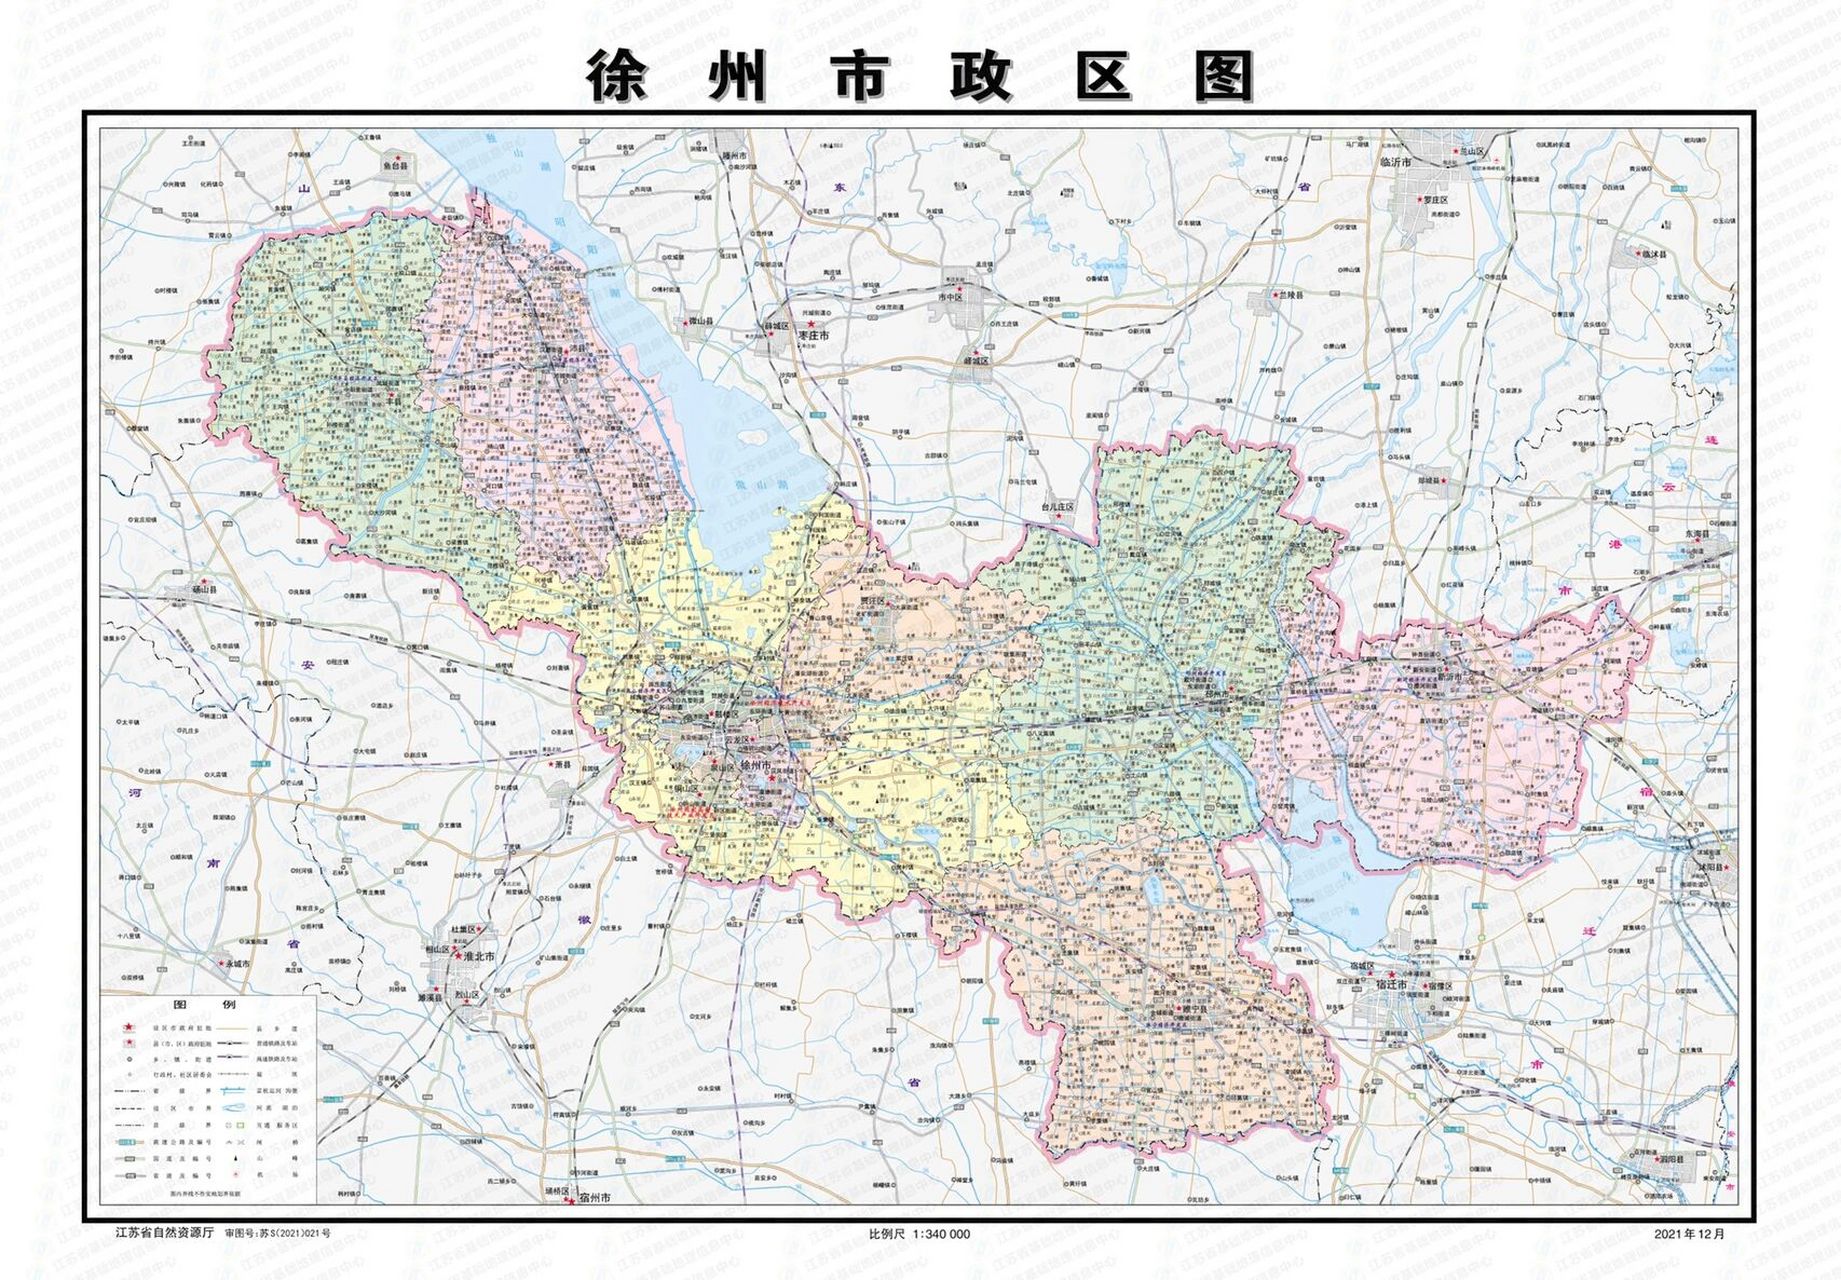 徐州市辖区地图图片